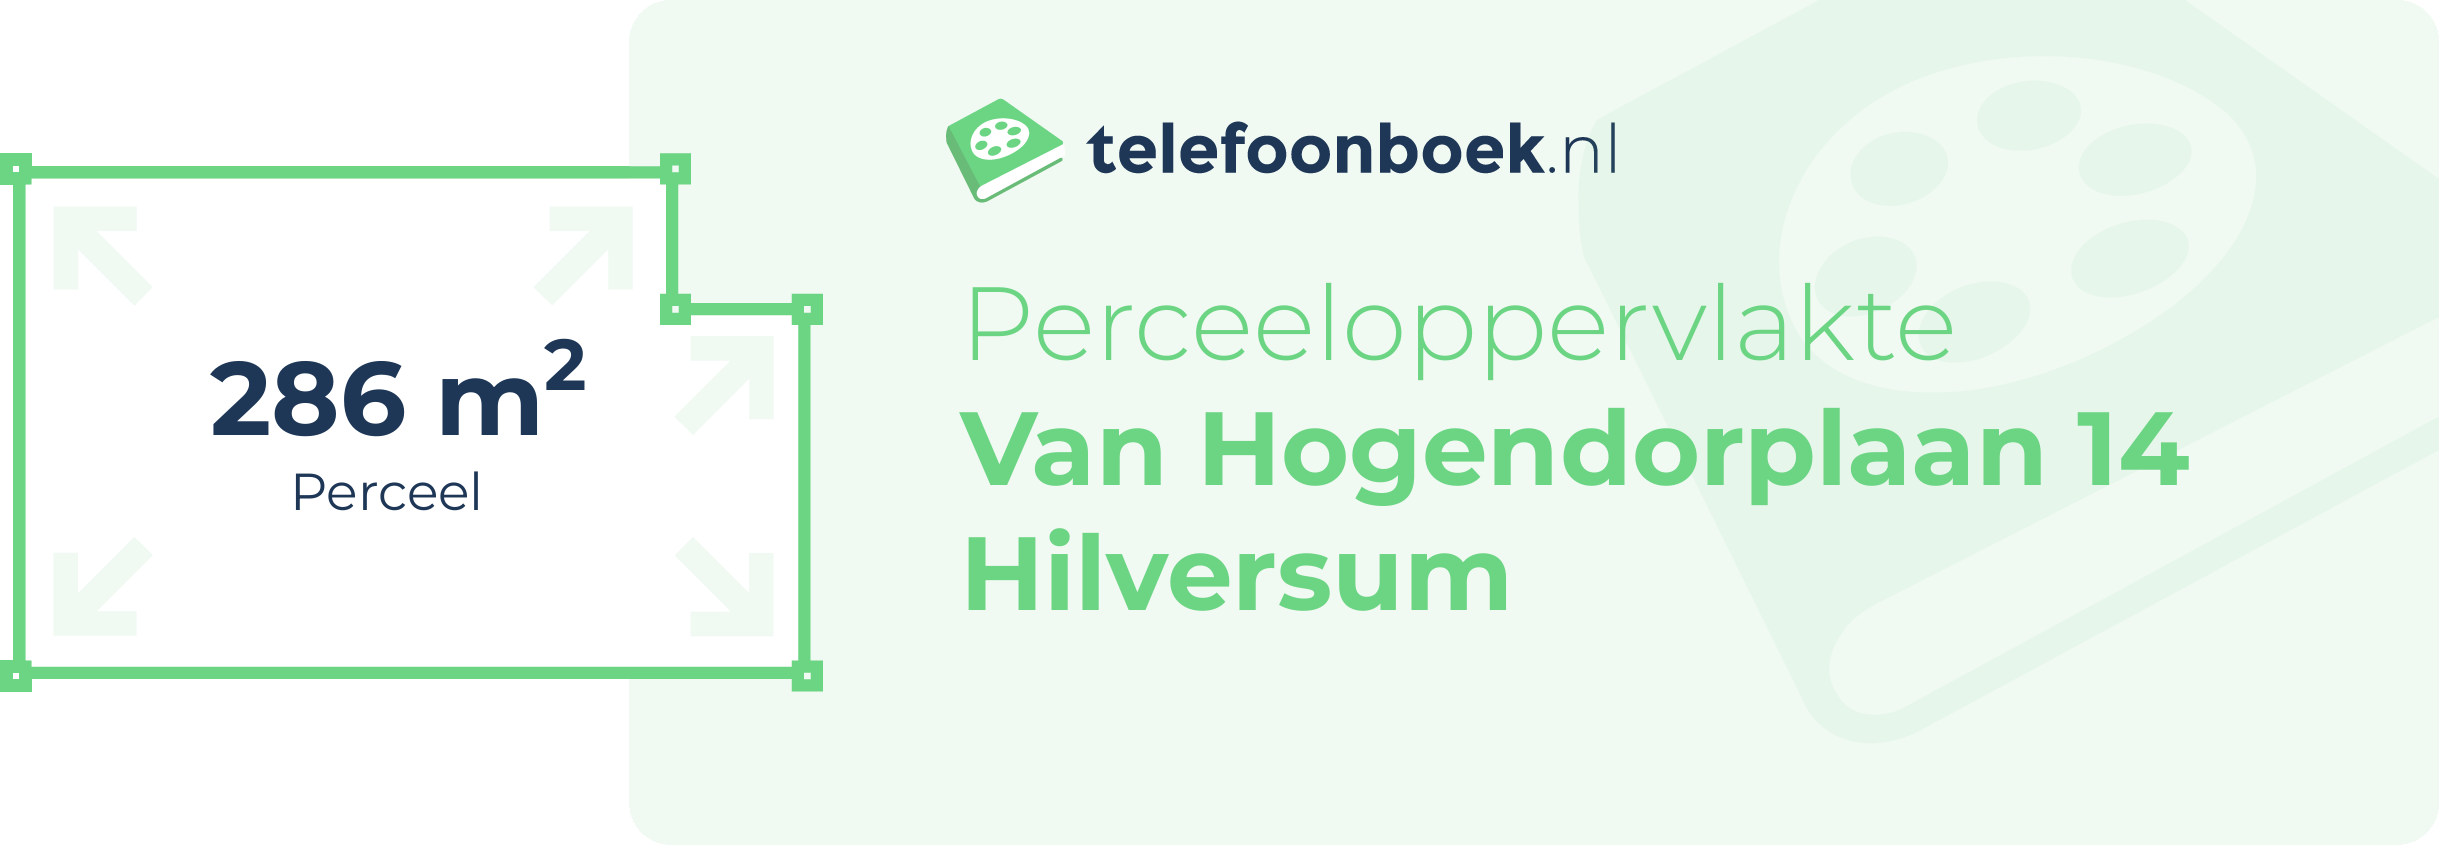 Perceeloppervlakte Van Hogendorplaan 14 Hilversum